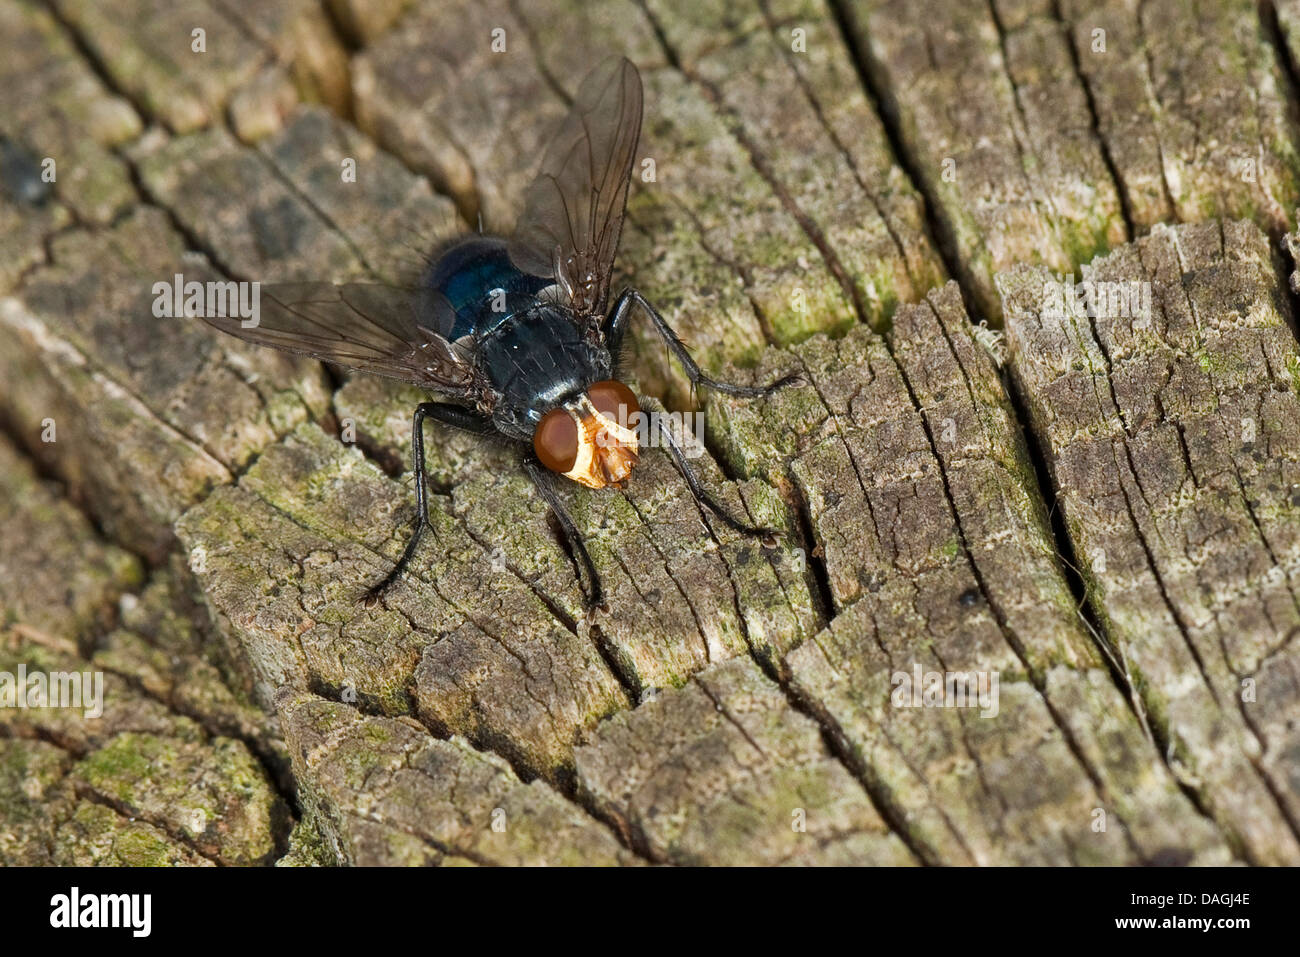 Bluebottle Blow Fly, Blowfly (Cynomya mortuorum, Cynomya hirta), sitting on wood, Germany Stock Photo